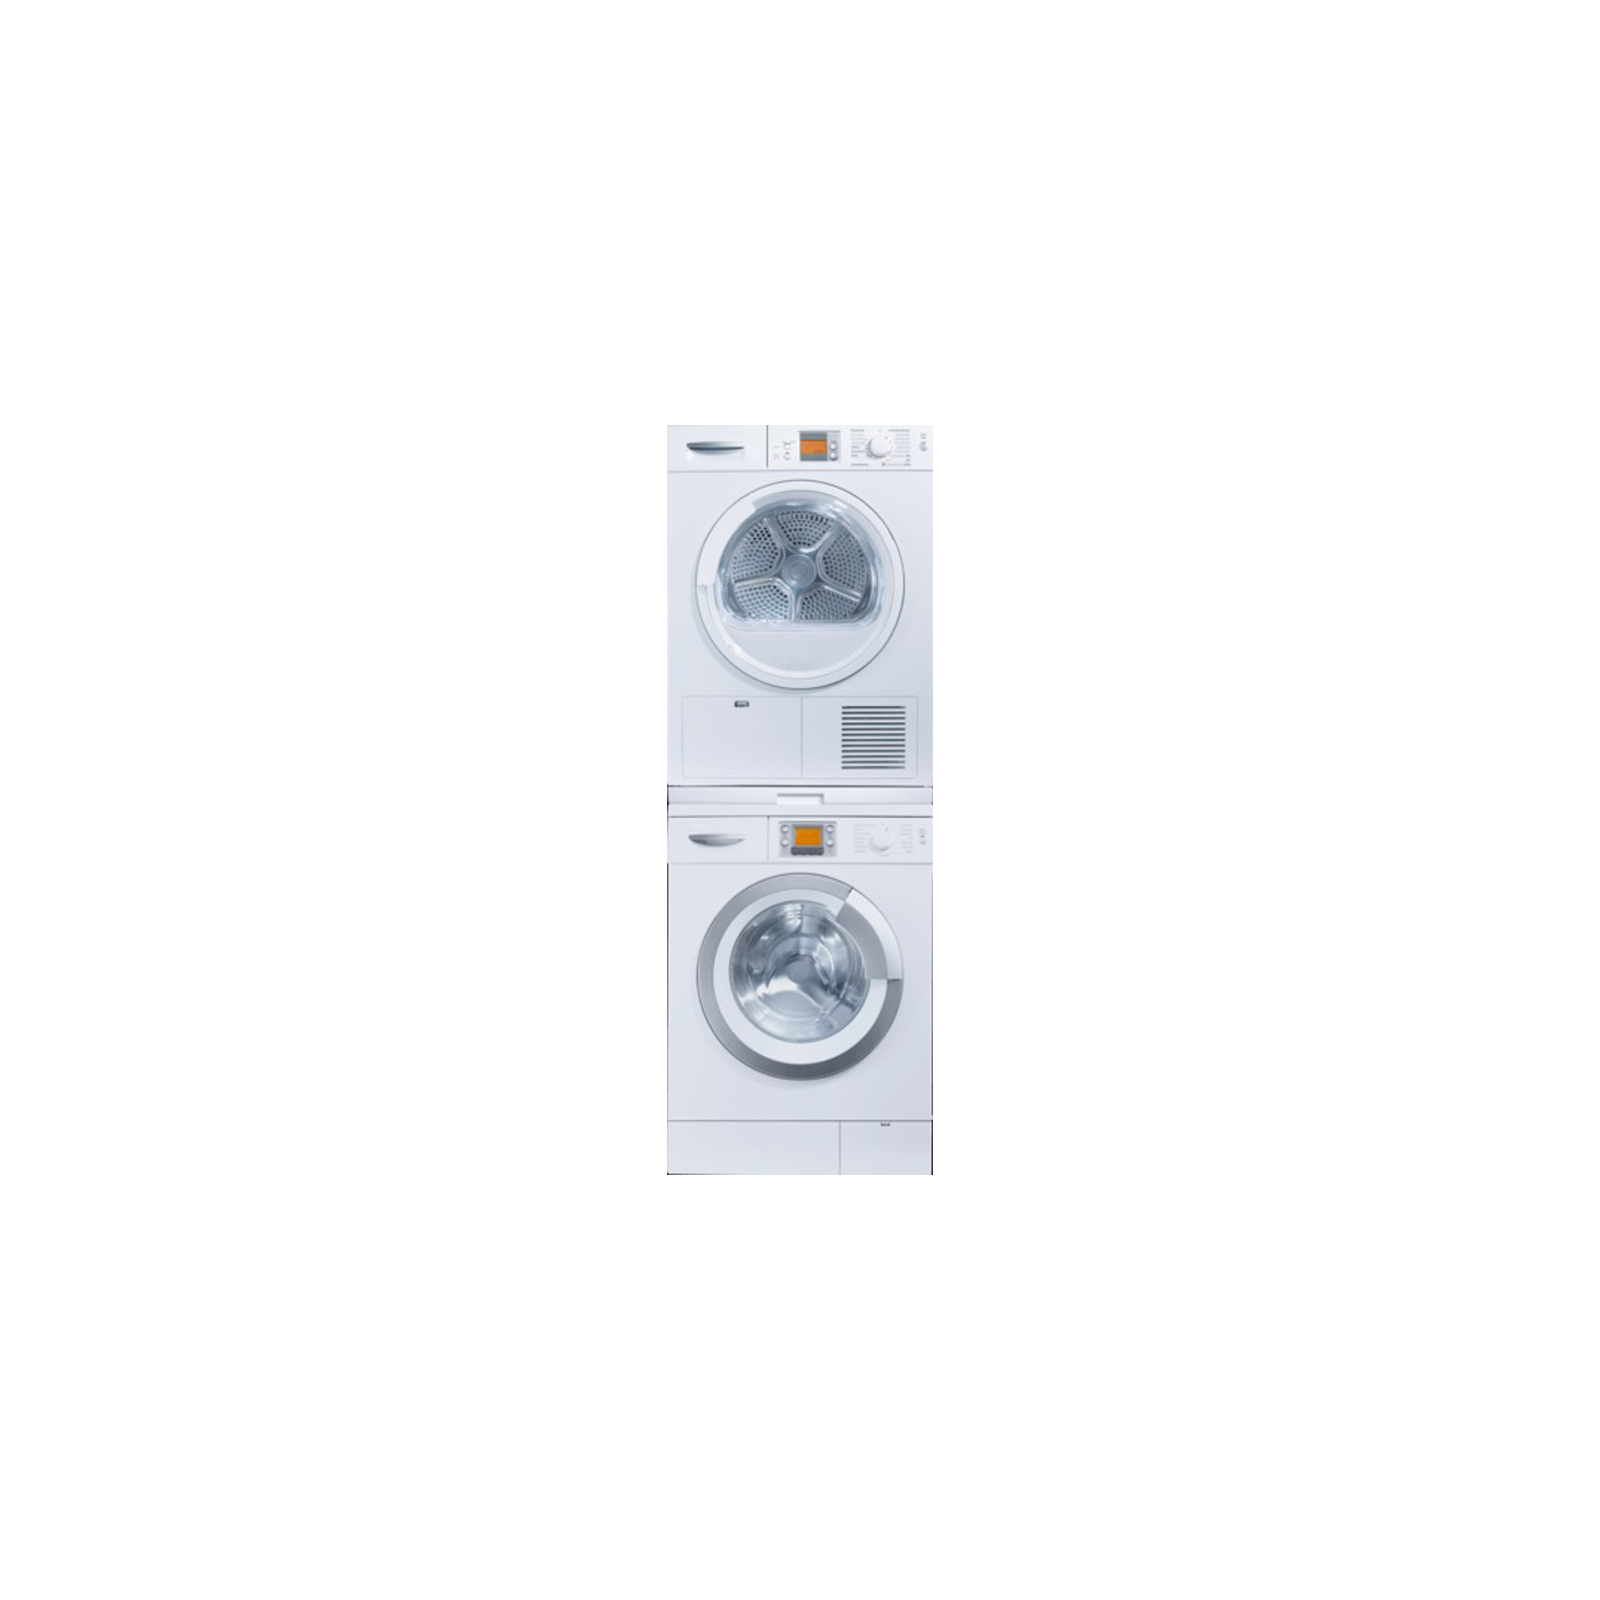 Аксесуар до пральних машин Bosch WTZ27410 з'єднувальна планка для пральних та сушильних маш (WTZ27410) зображення 3